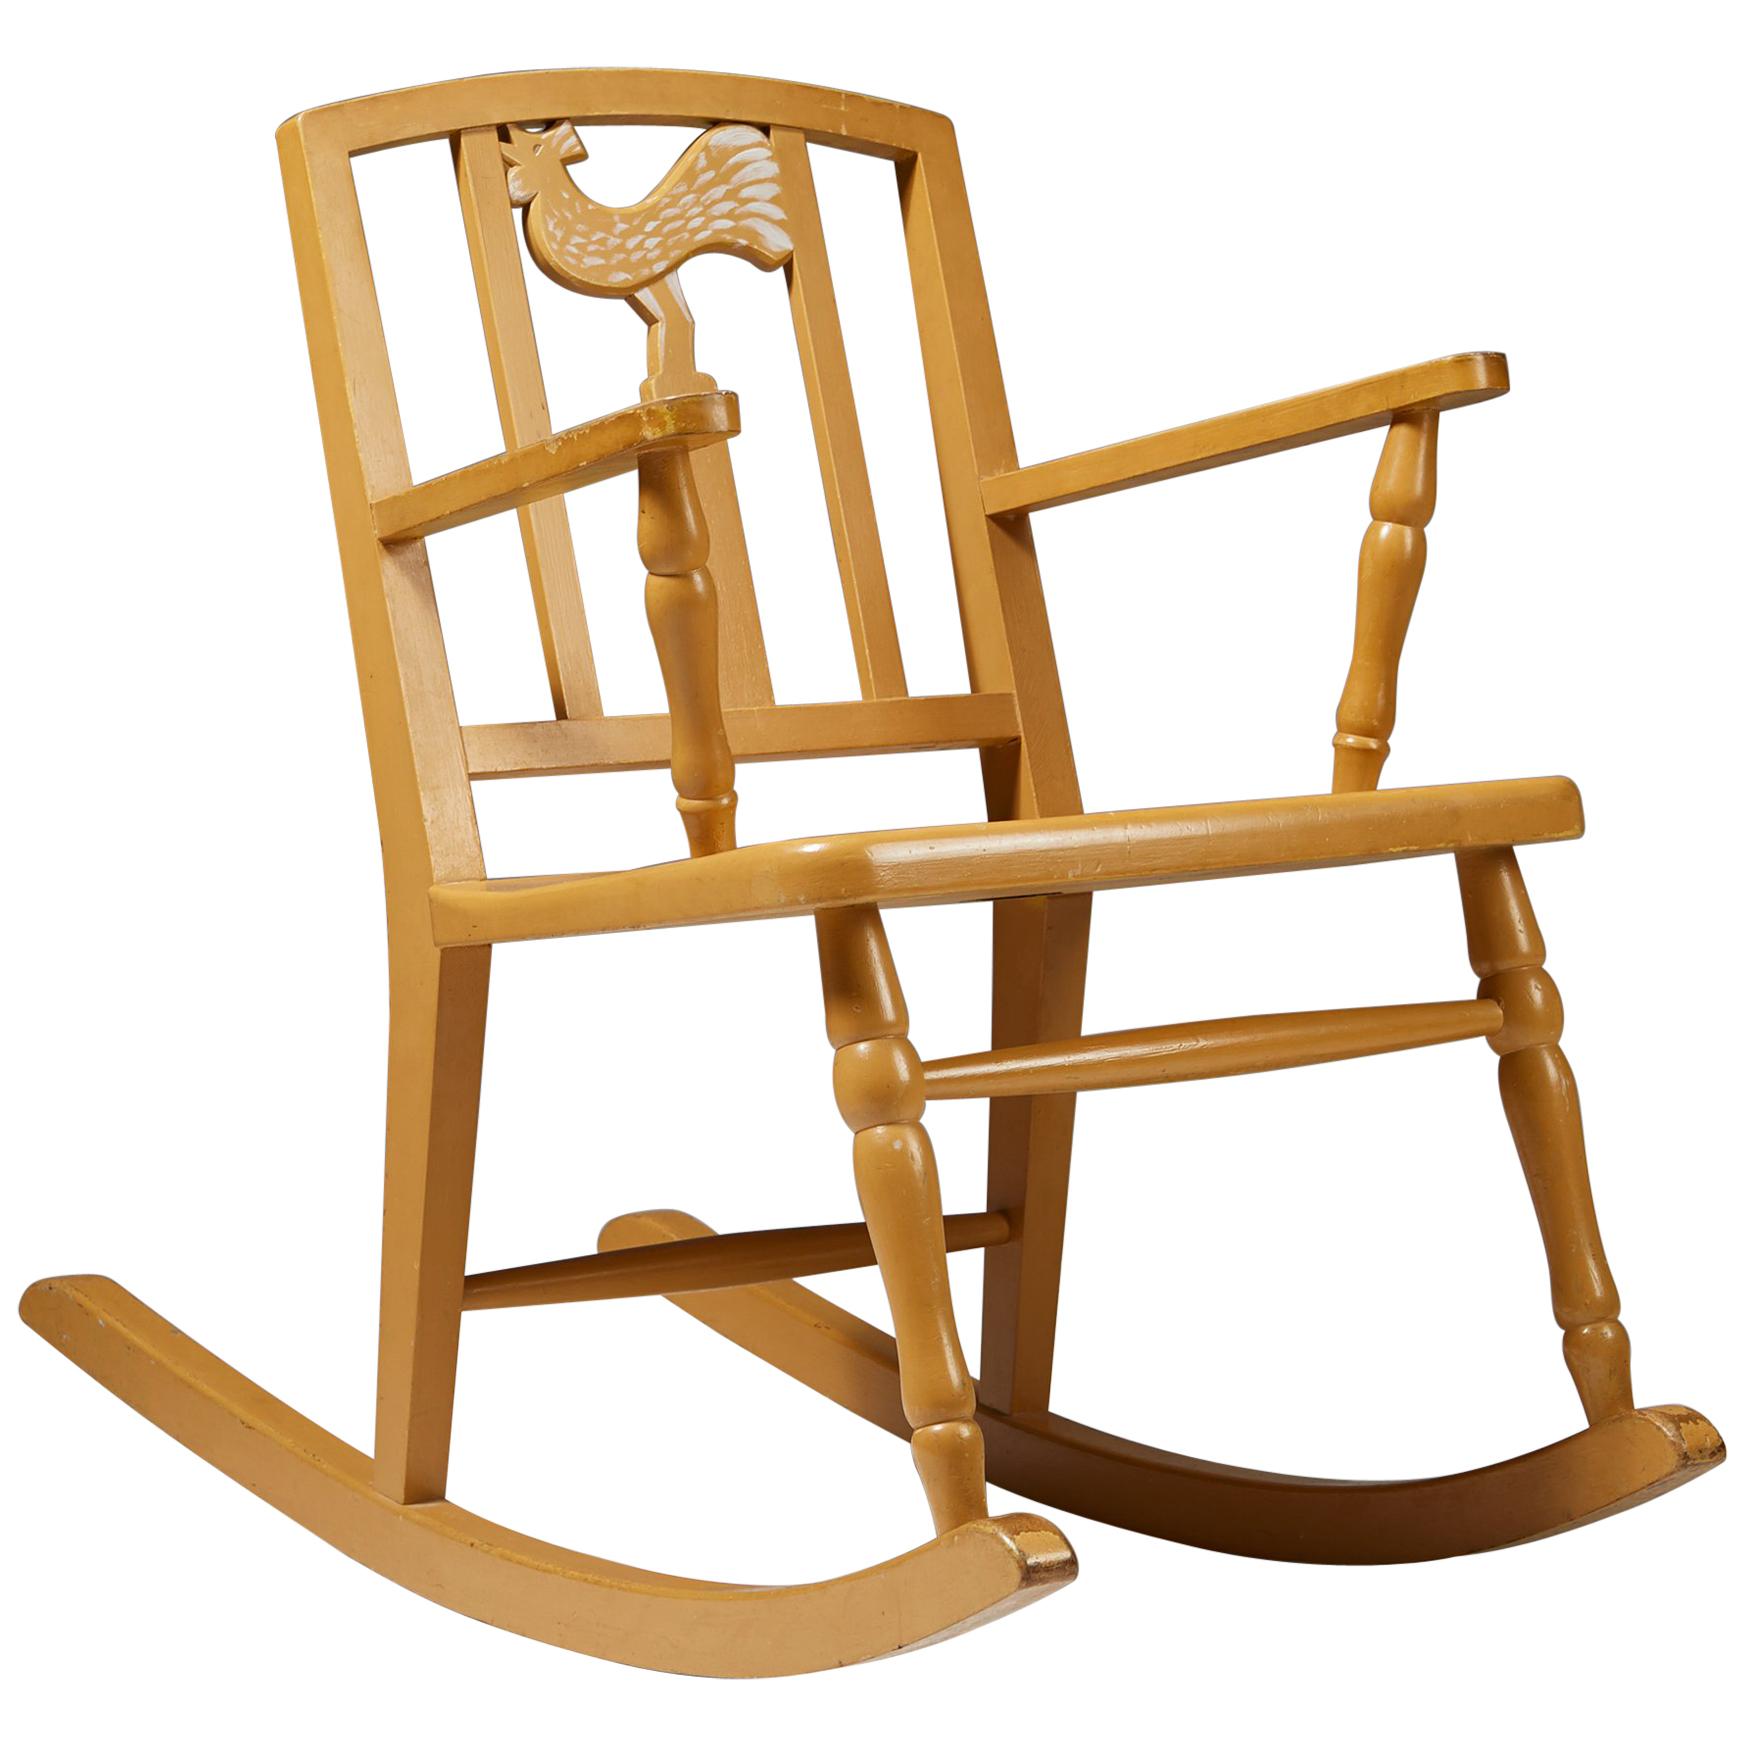 Children’s Rocking Chair by Carl Hörvik for Nordiska Kompaniet, Sweden, 1923